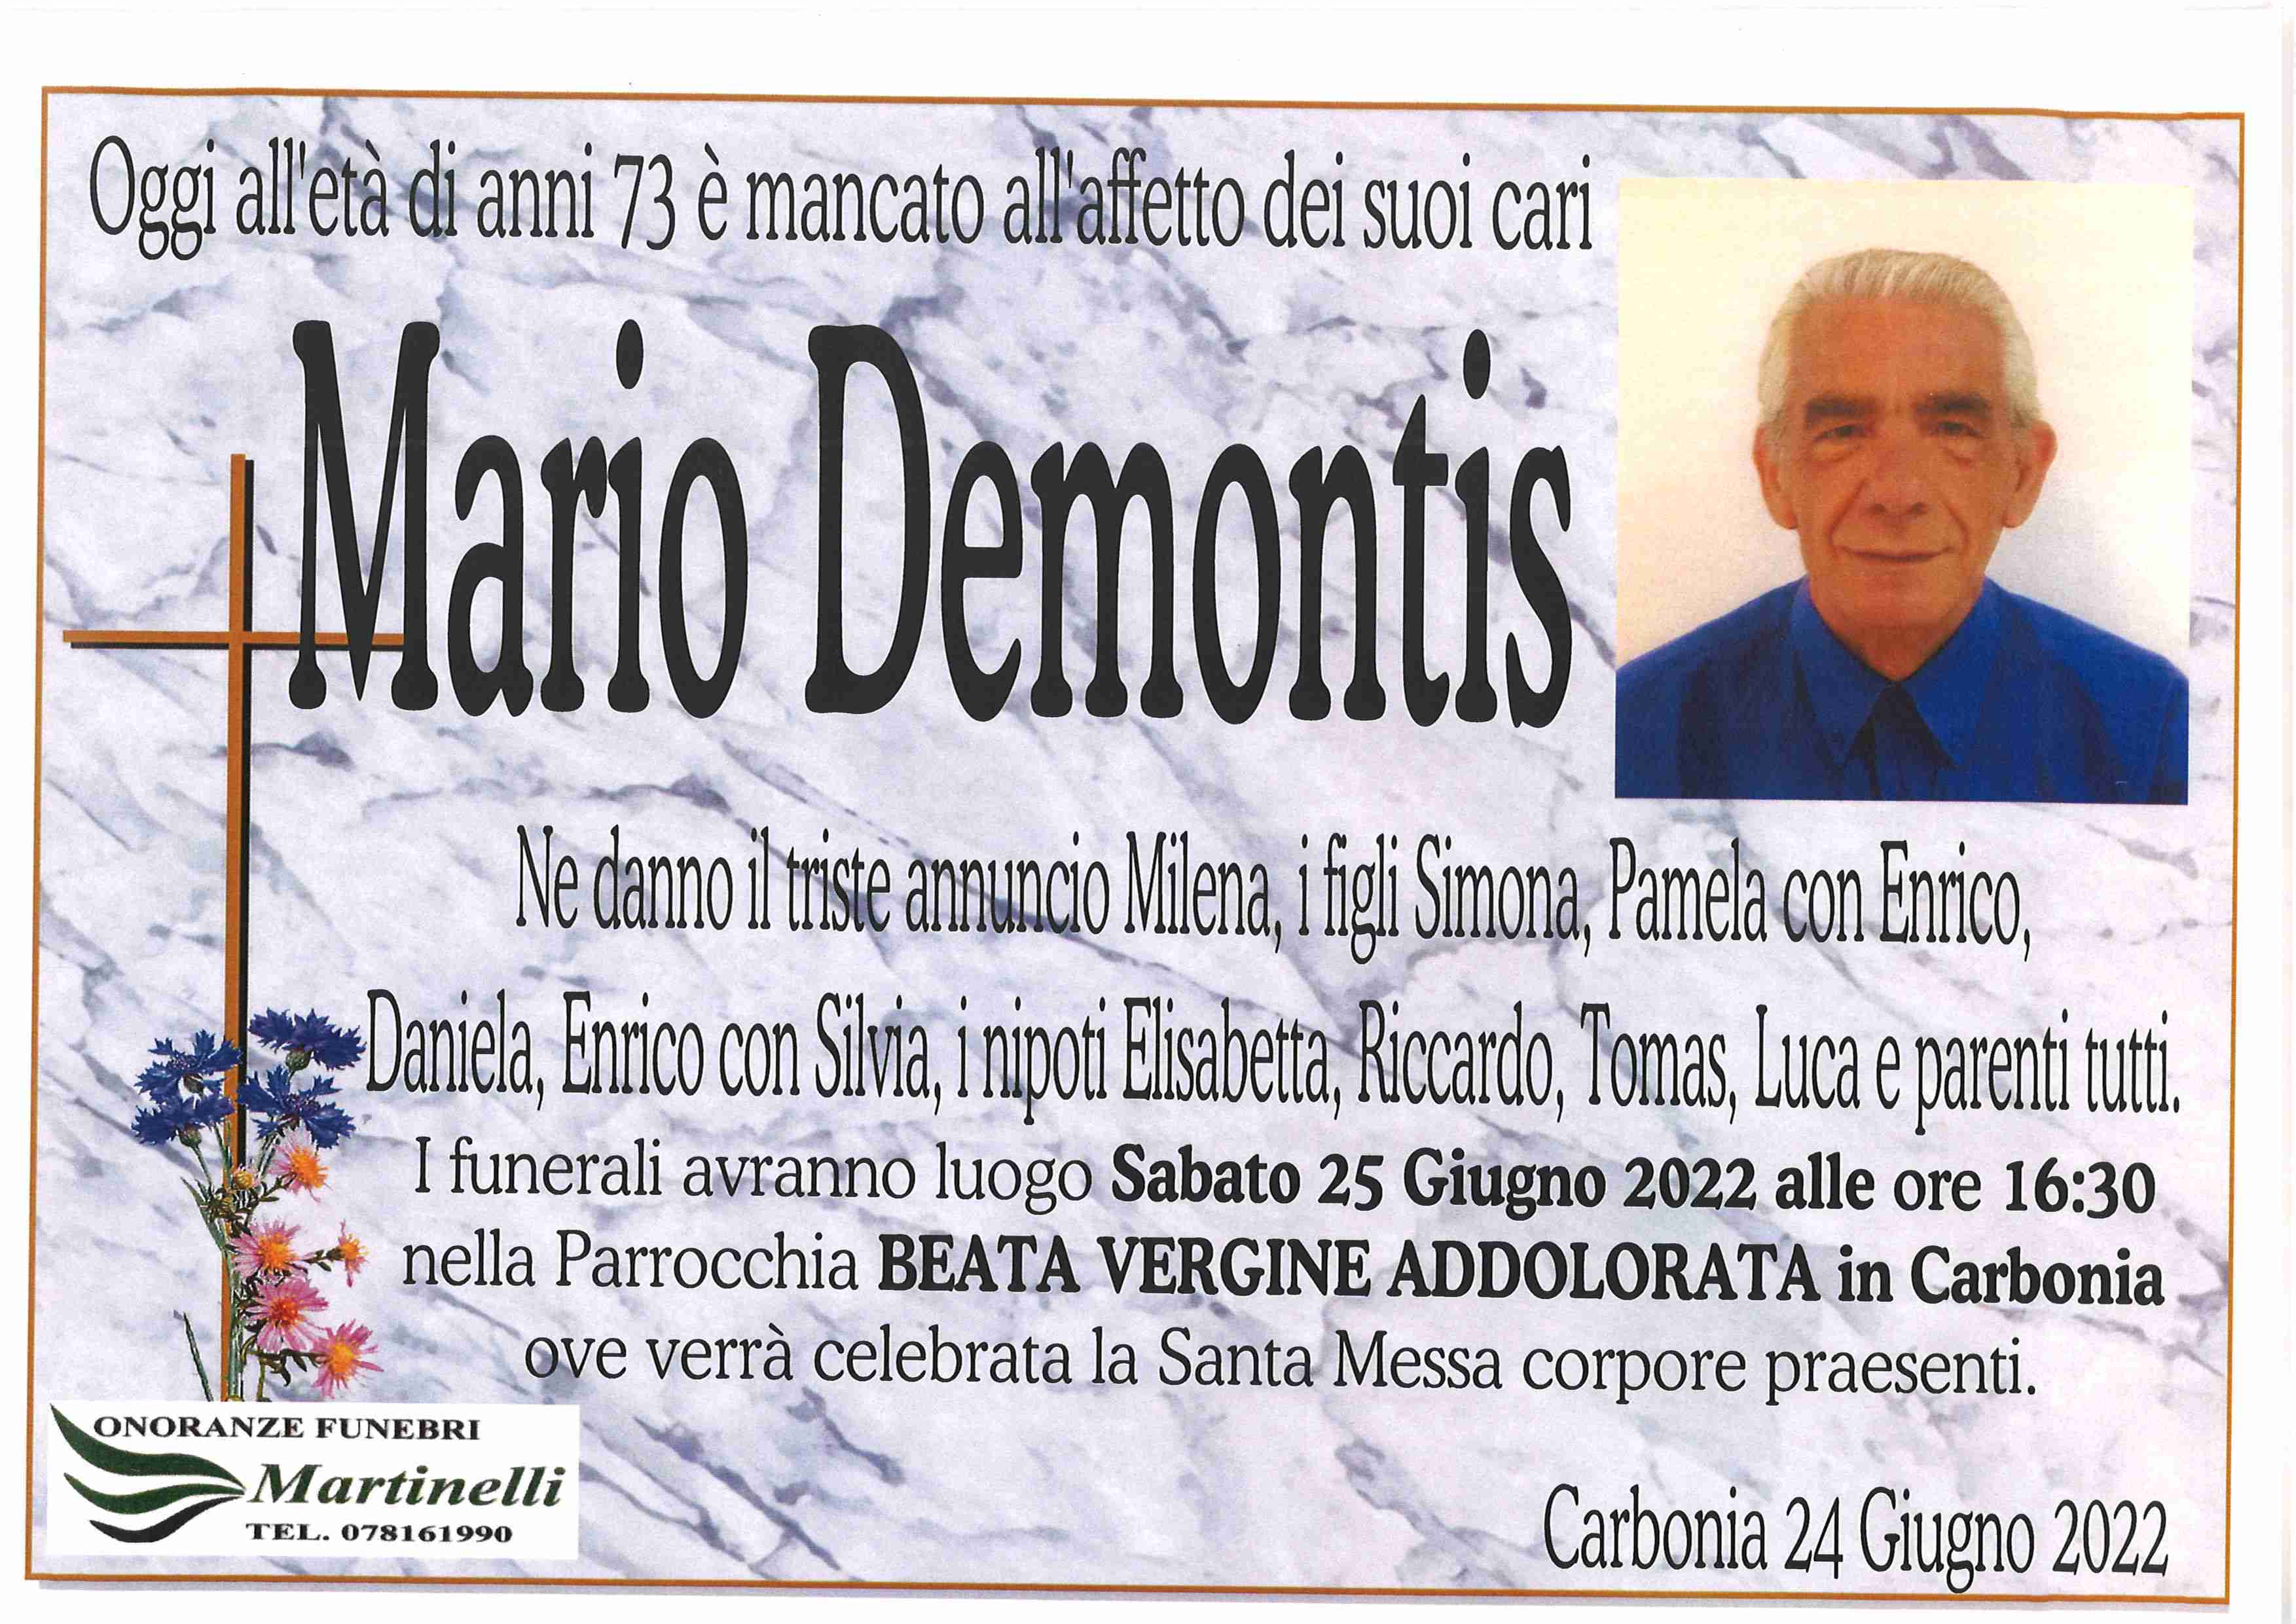 Mario Demontis